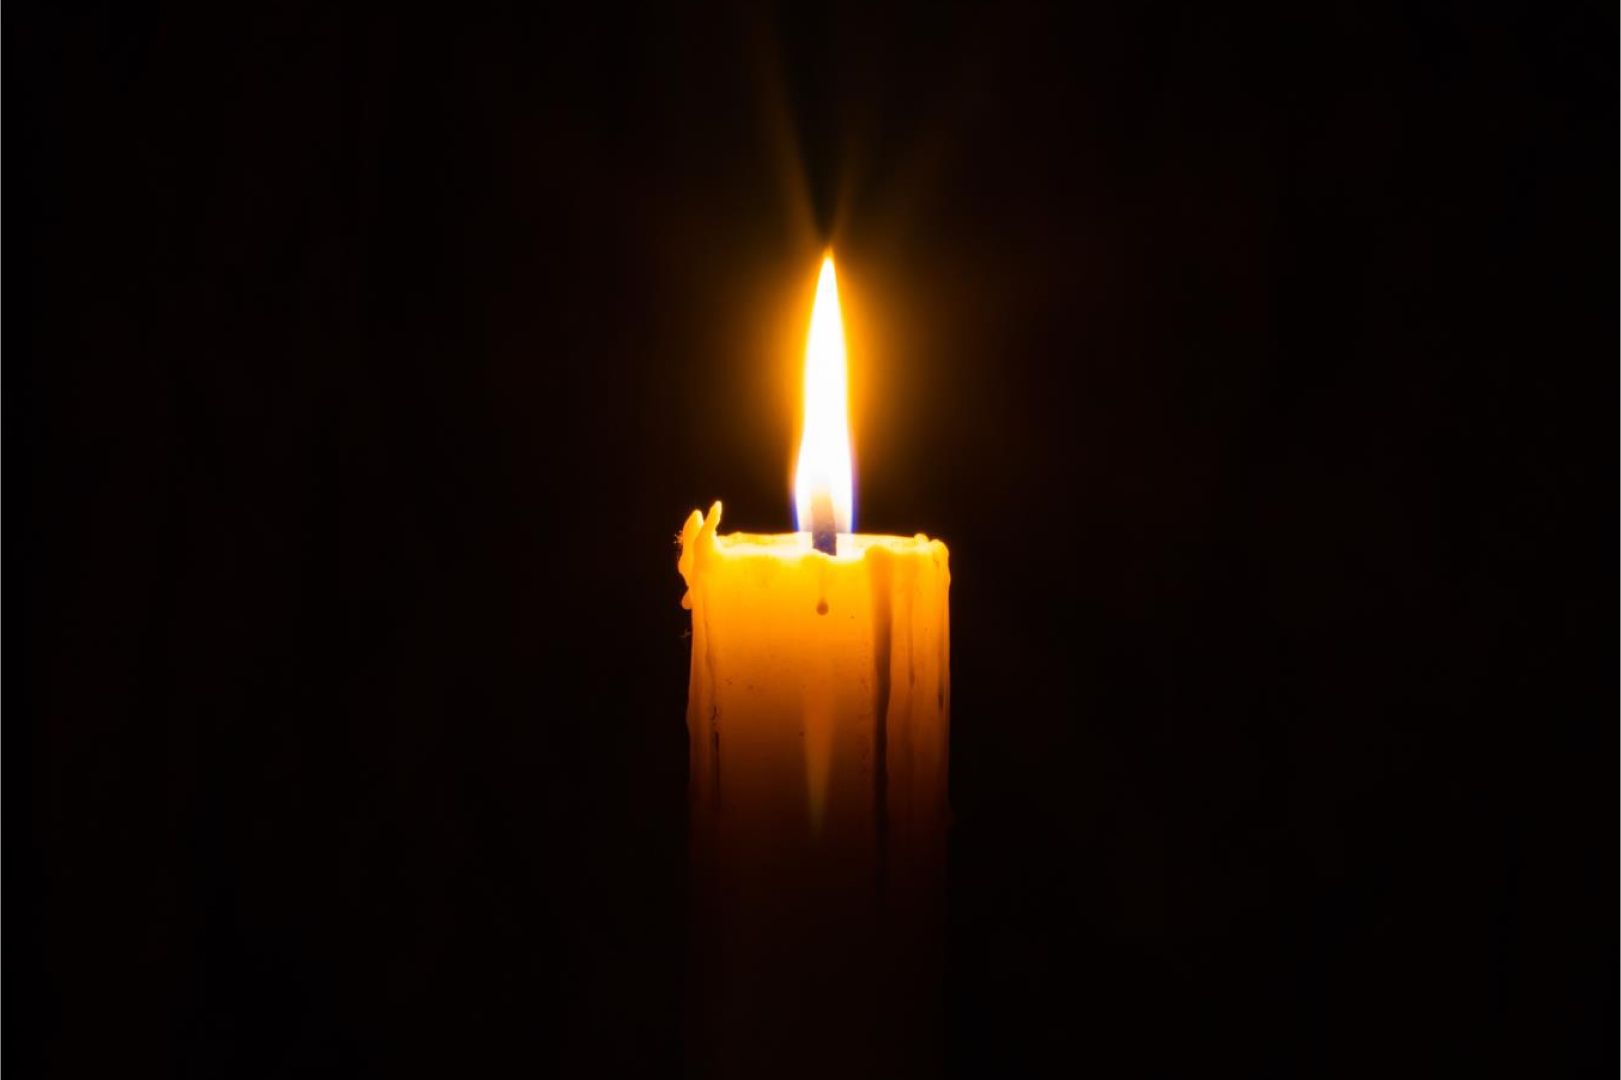 СмолГУ выражает соболезнования семьям погибших и пострадавших в «Крокус Сити Холле»